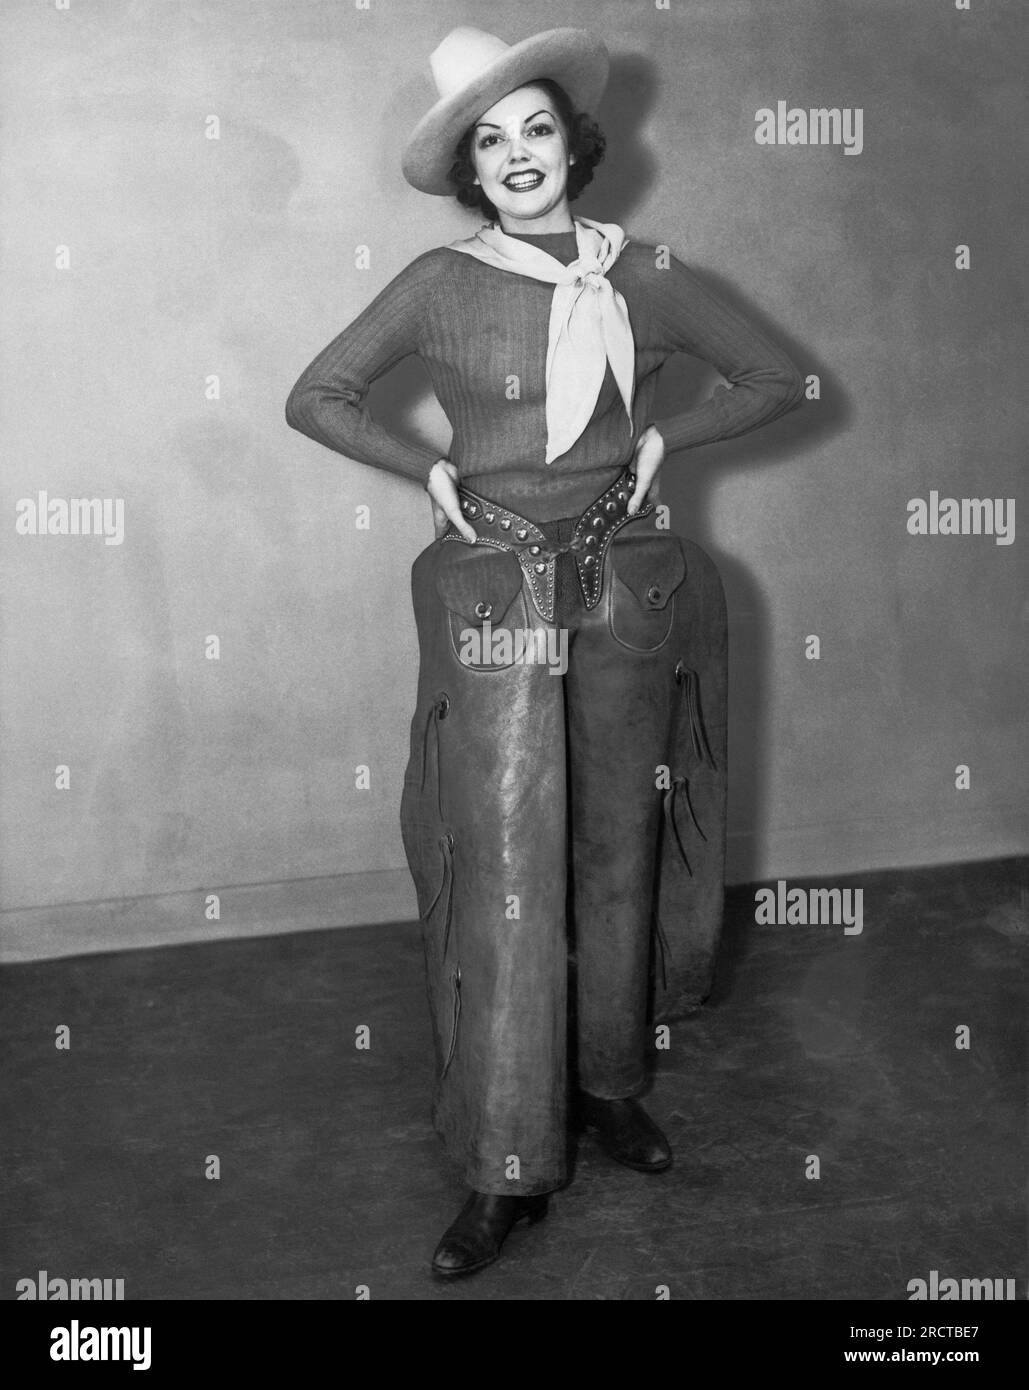 Vereinigte Staaten: c. 1940 eine attraktive Frau mit Cowboyhut, Taschentuch, Stiefeln und Männchen steht lächelnd mit den Händen auf der Hüfte. Stockfoto